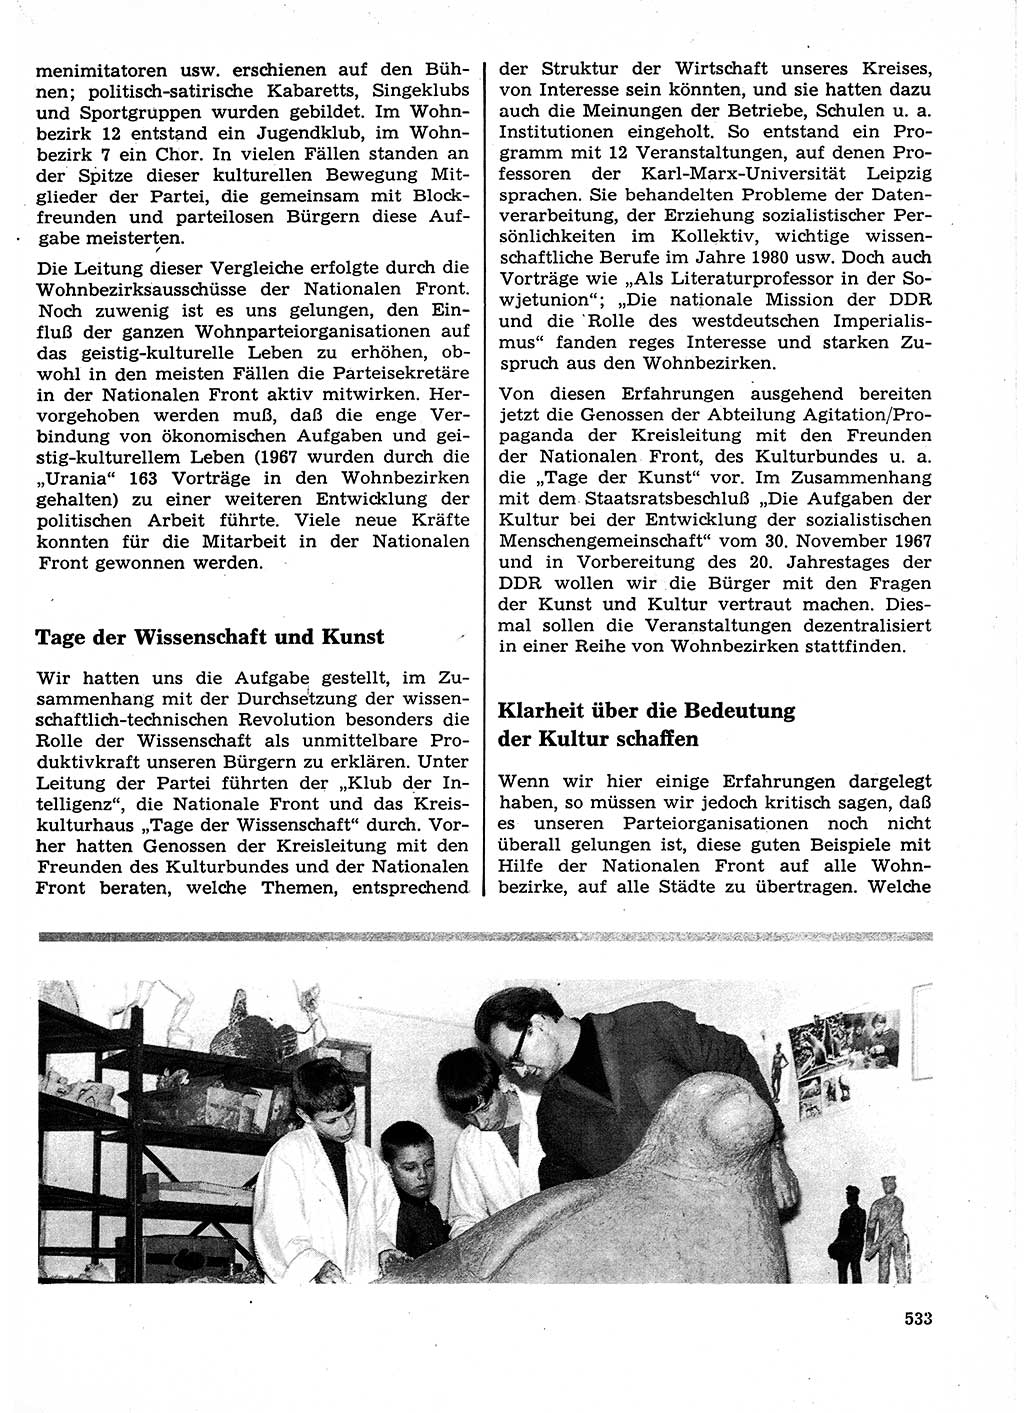 Neuer Weg (NW), Organ des Zentralkomitees (ZK) der SED (Sozialistische Einheitspartei Deutschlands) für Fragen des Parteilebens, 23. Jahrgang [Deutsche Demokratische Republik (DDR)] 1968, Seite 533 (NW ZK SED DDR 1968, S. 533)